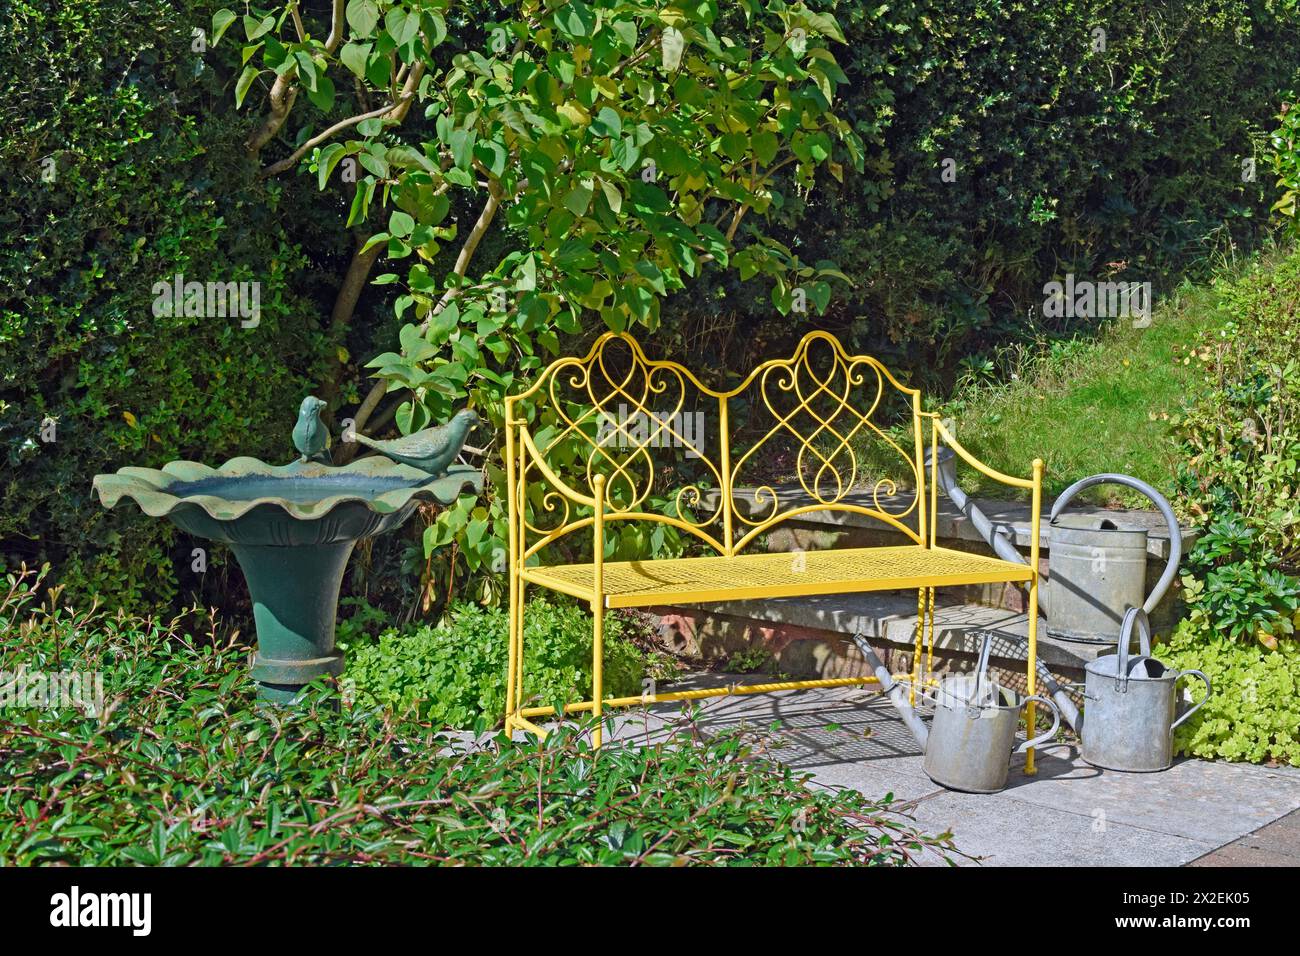 Botanica, panca in metallo ornato giallo in un giardino con bagno di uccelli in metallo e lattine da innaffiare, ULTERIORI DIRITTI-INFORMAZIONI-NON-DISPONIBILI Foto Stock